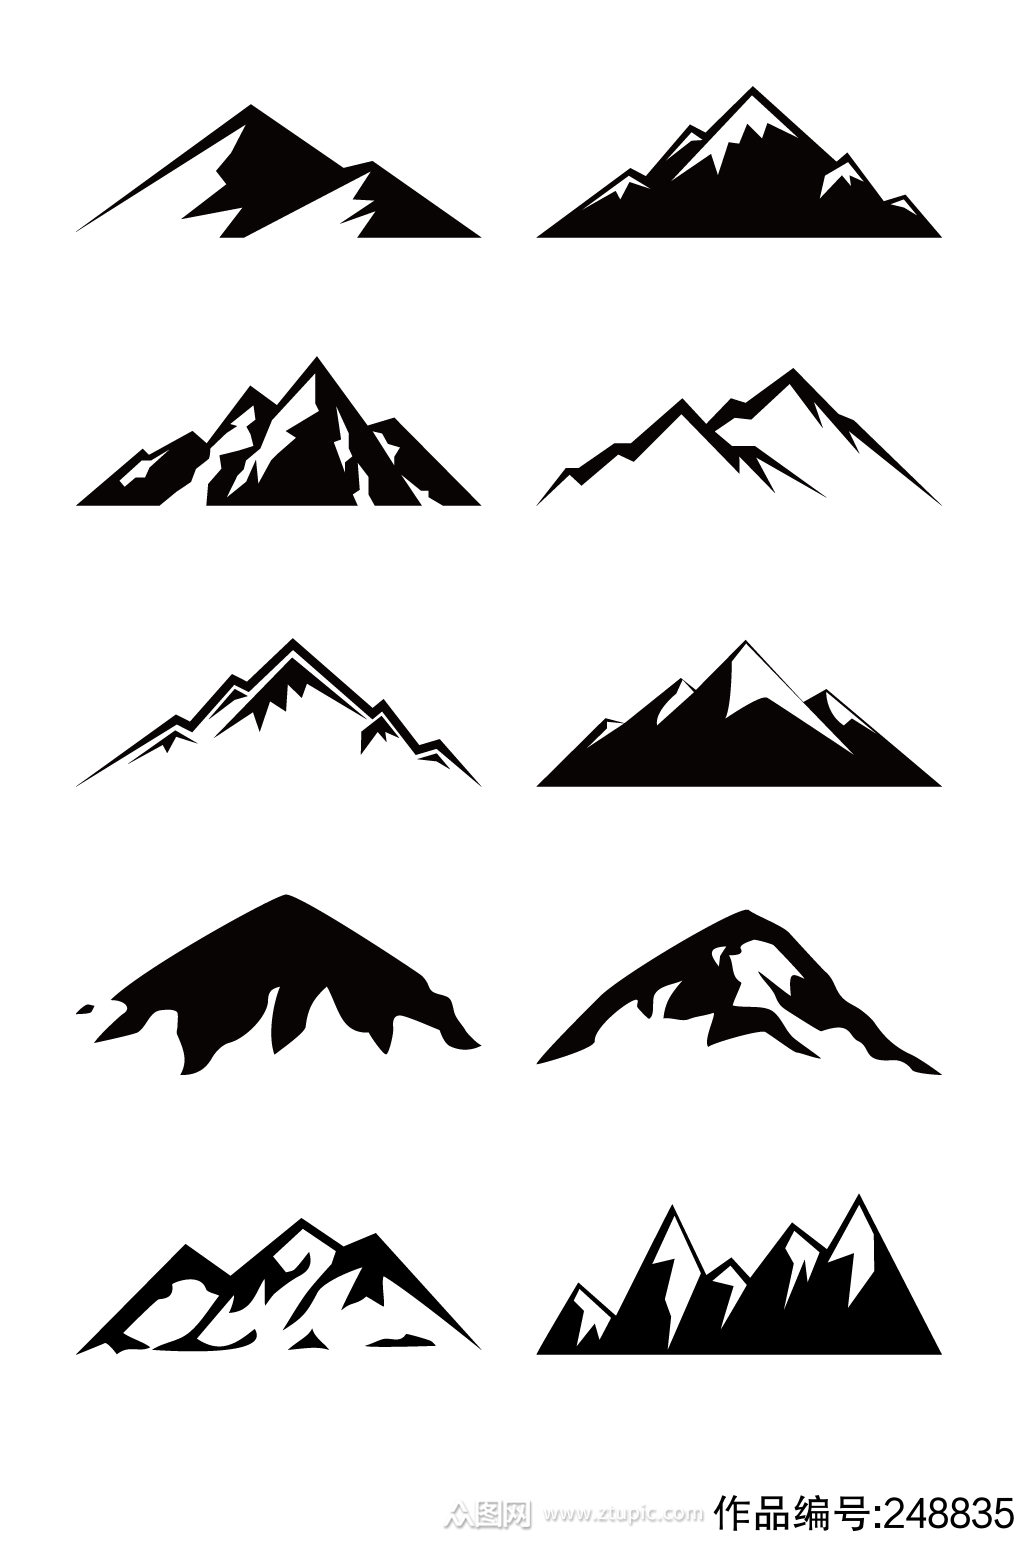 卡通手绘雪山山峰图标素材